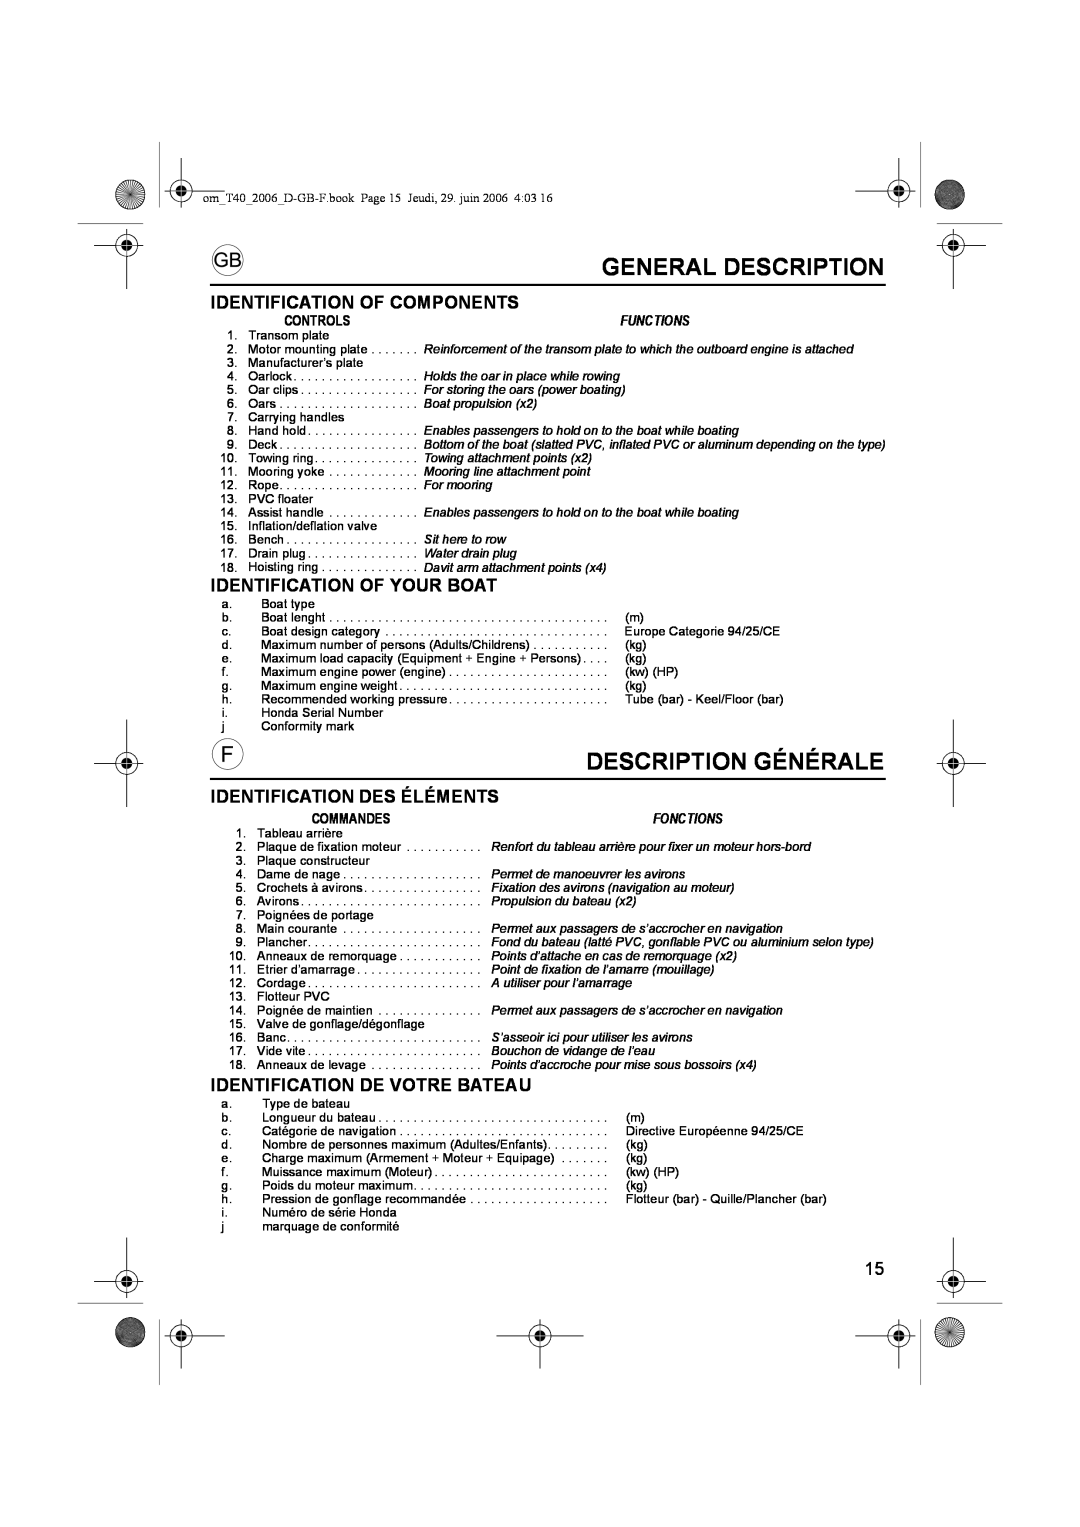 Honda Power Equipment T20 General Description, Description Générale, Identification Of Components, Functions, Fonctions 